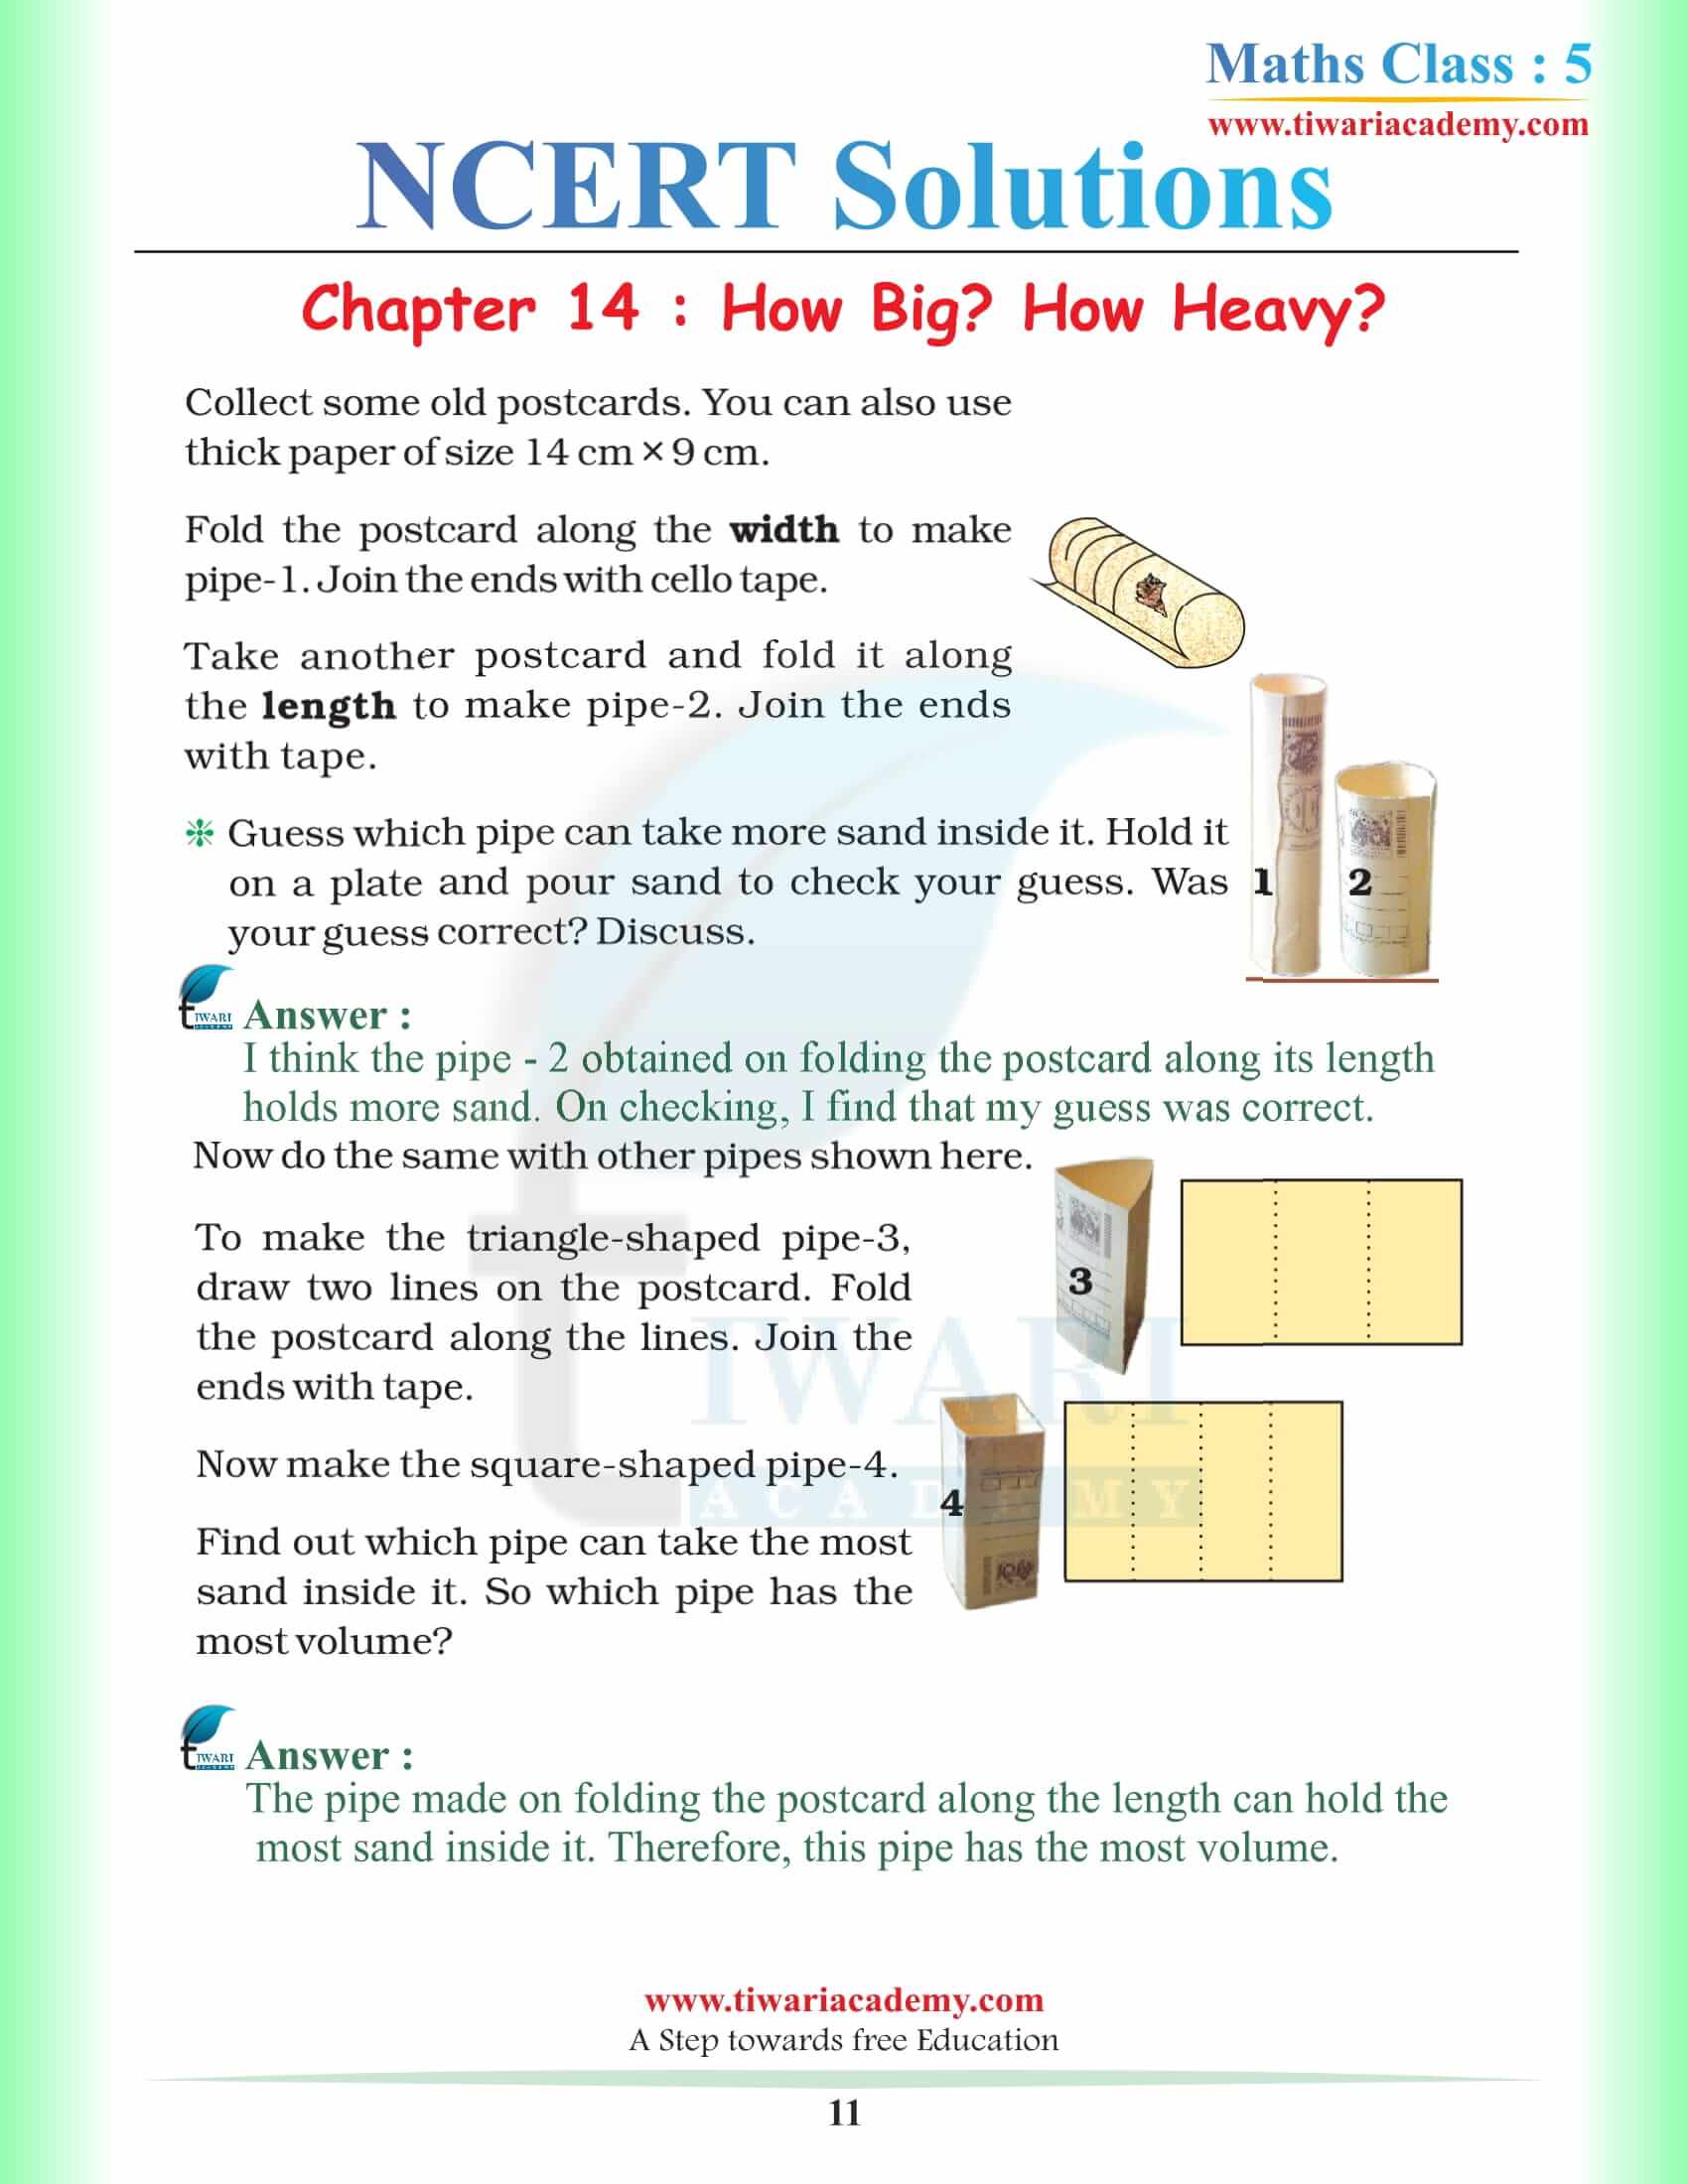 Class 5 Maths Chapter 14 NCERT Question Answers